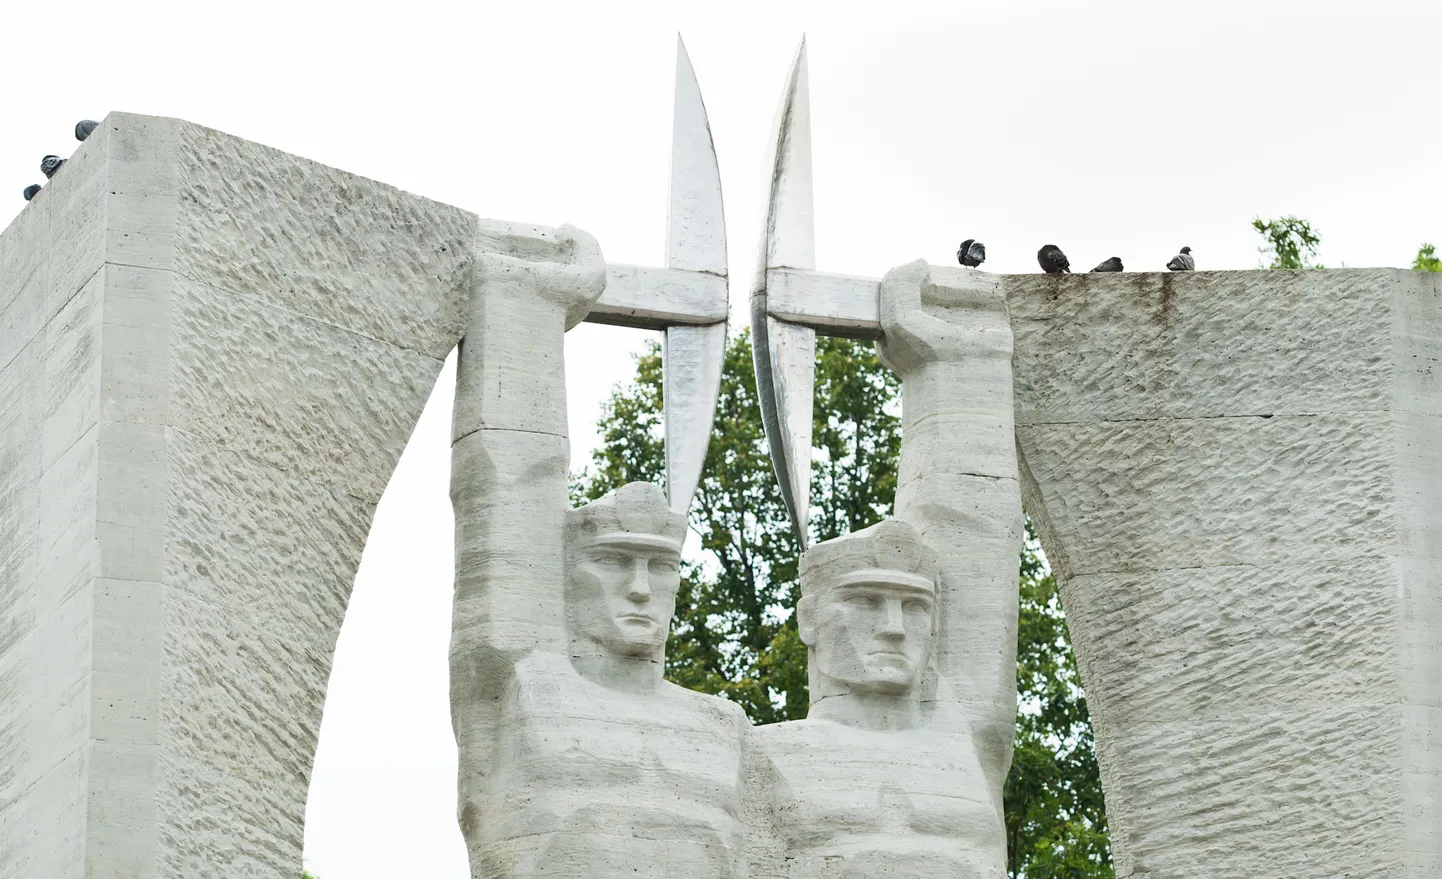 Монумент "Слава труду", расположенный в центре города Кохтла-Ярве. Снимок иллюстративный.